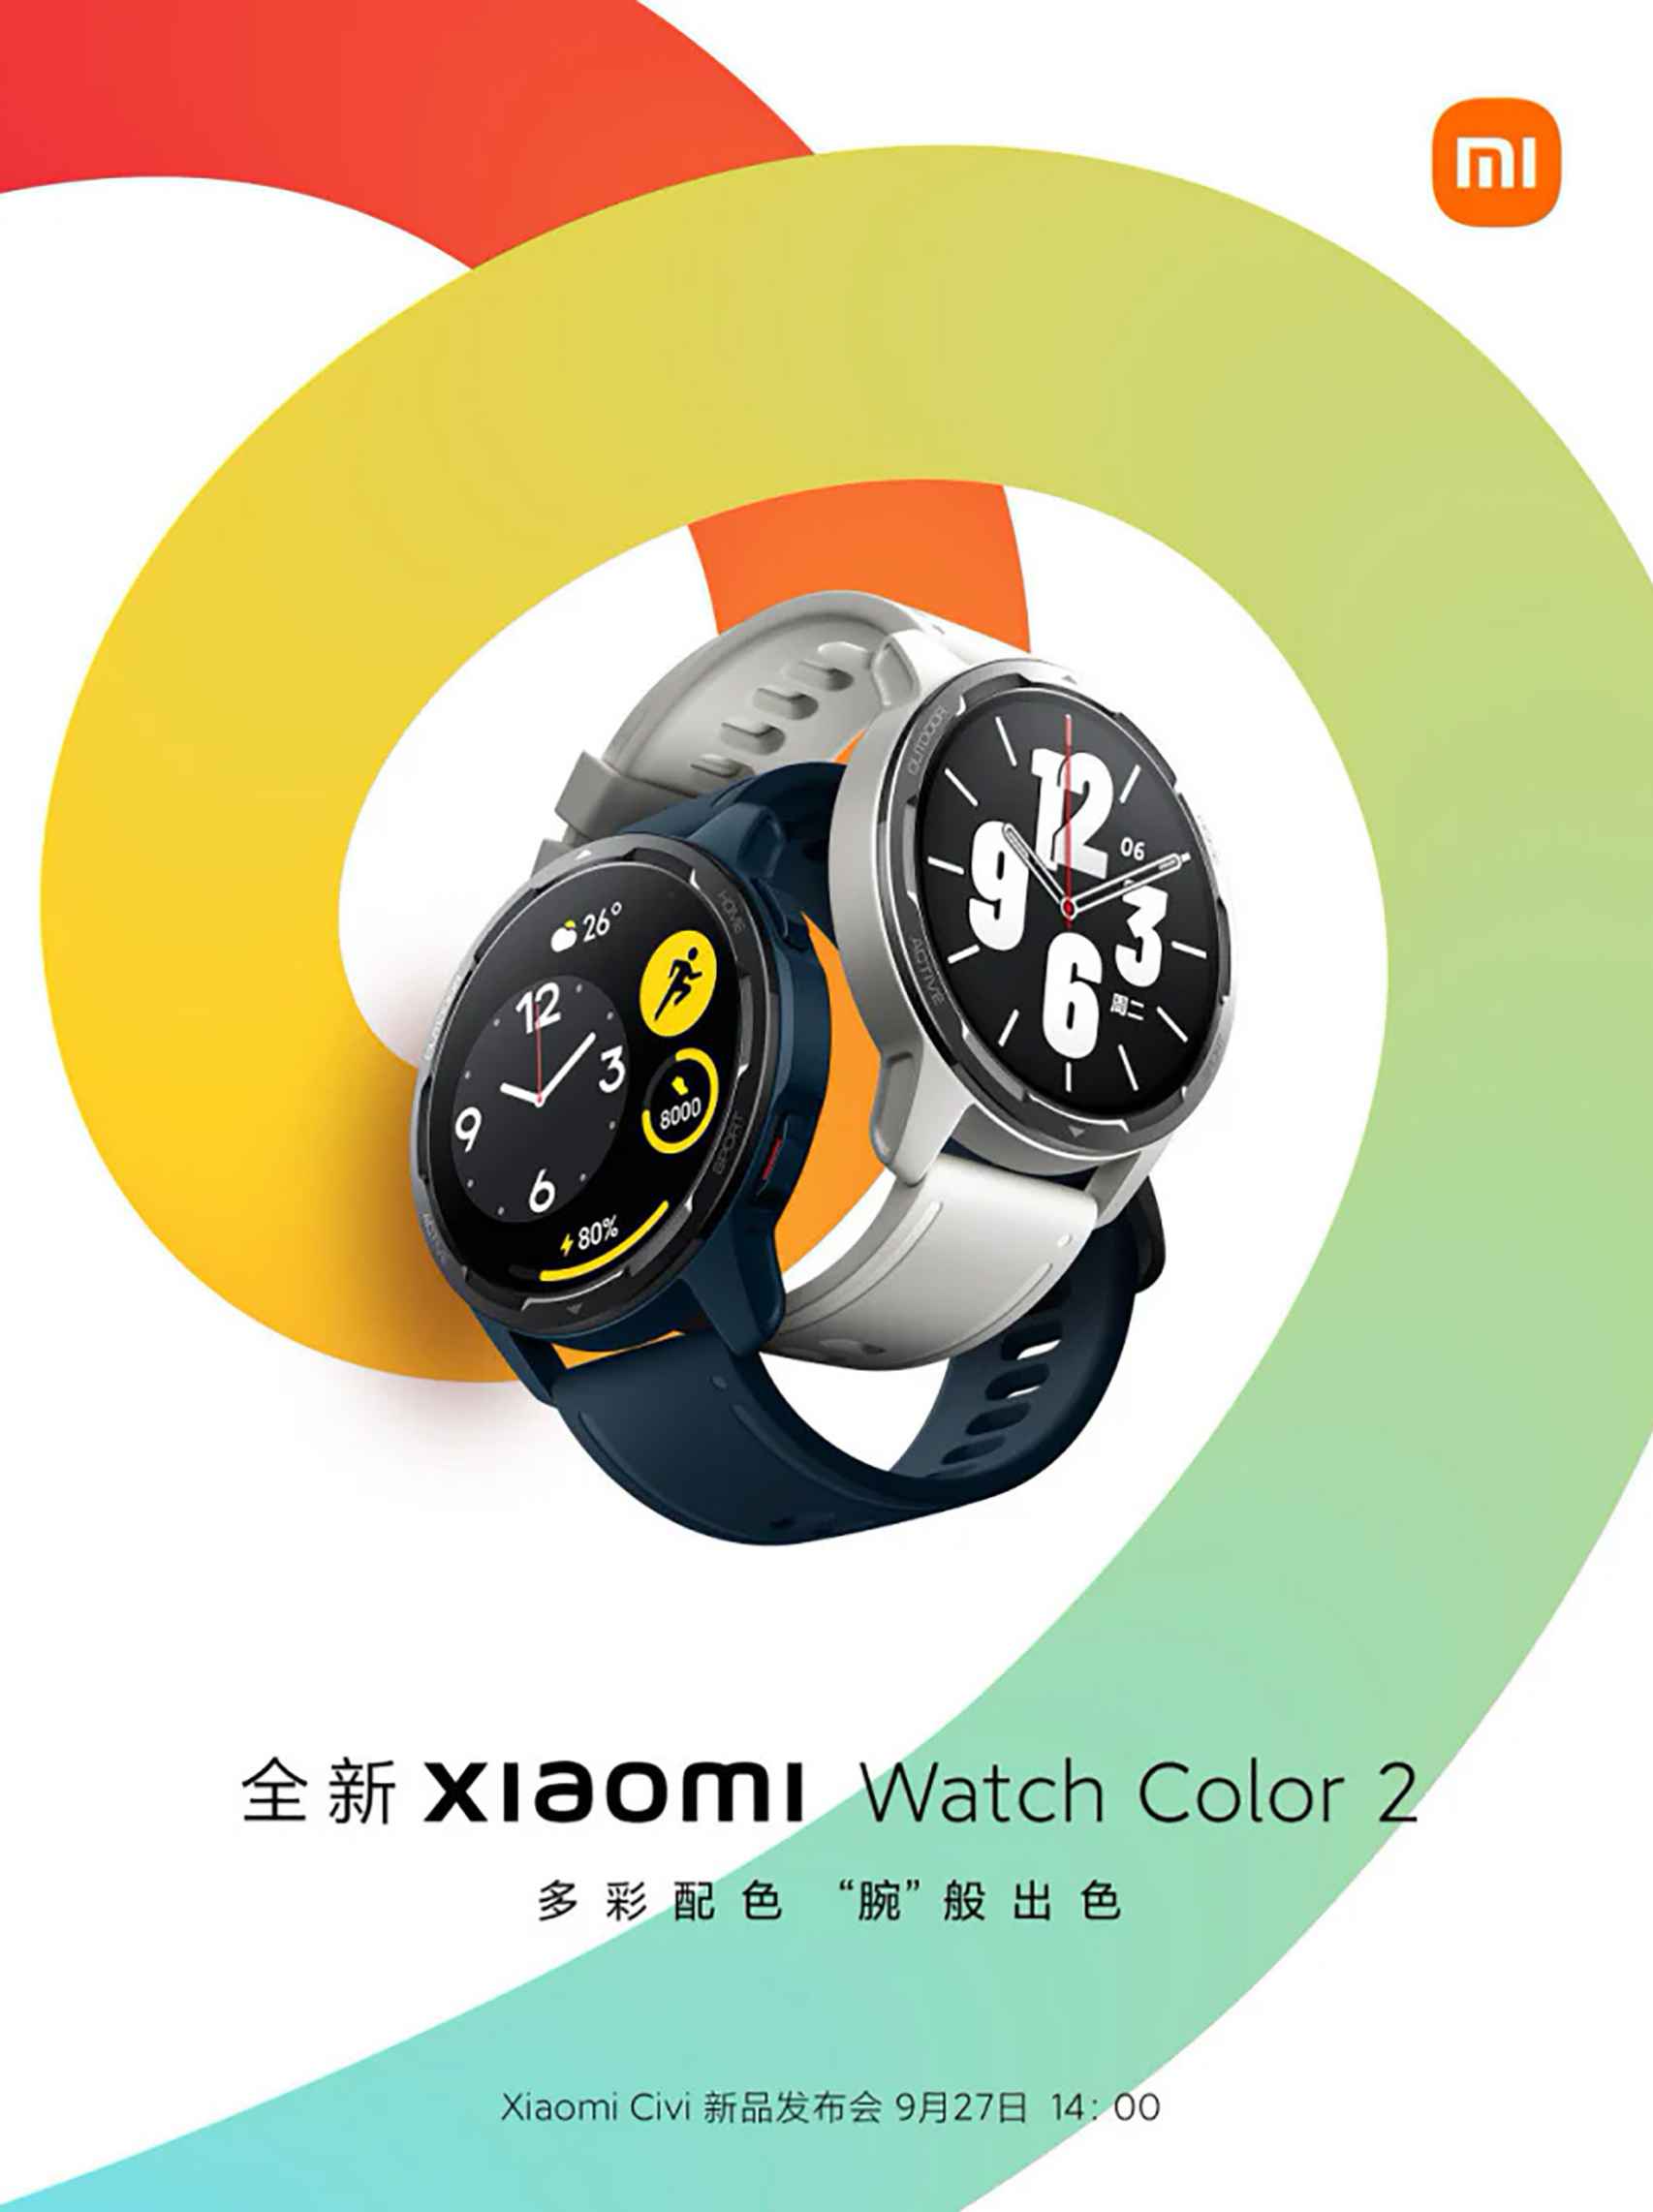 Watch Color 2 de Xiaomi